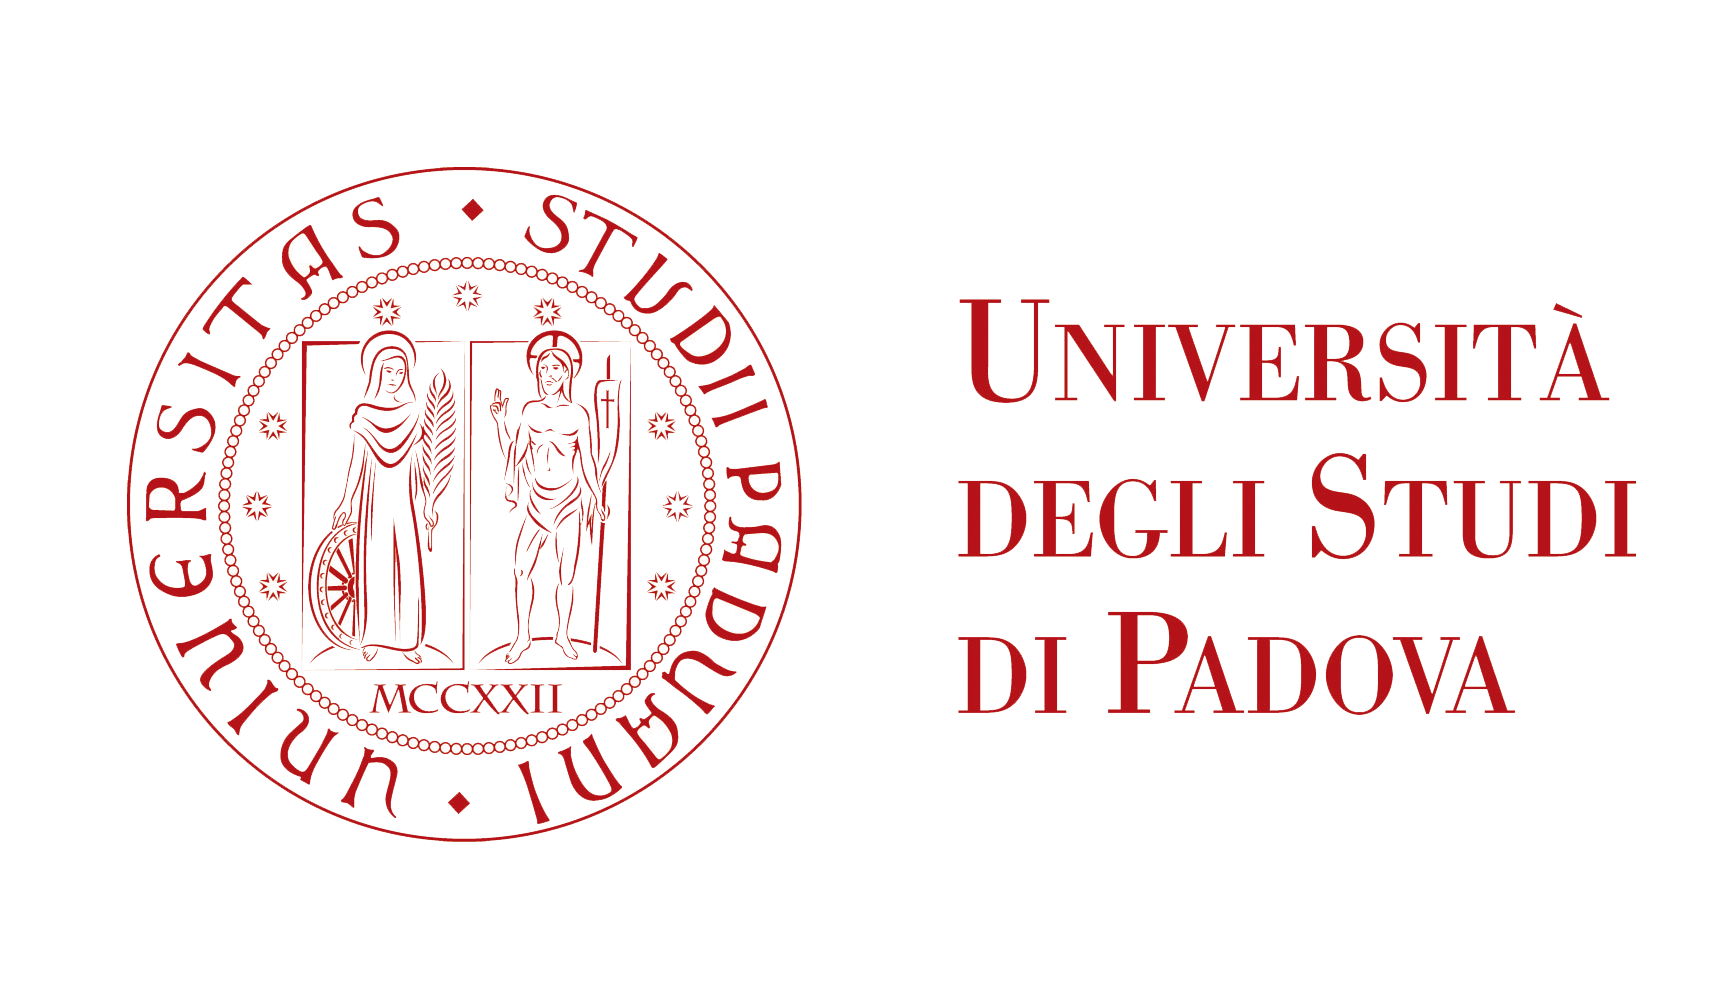 بورسیه تحصیلی دانشگاه پادوا ایتالیا برای سال 2021-2020